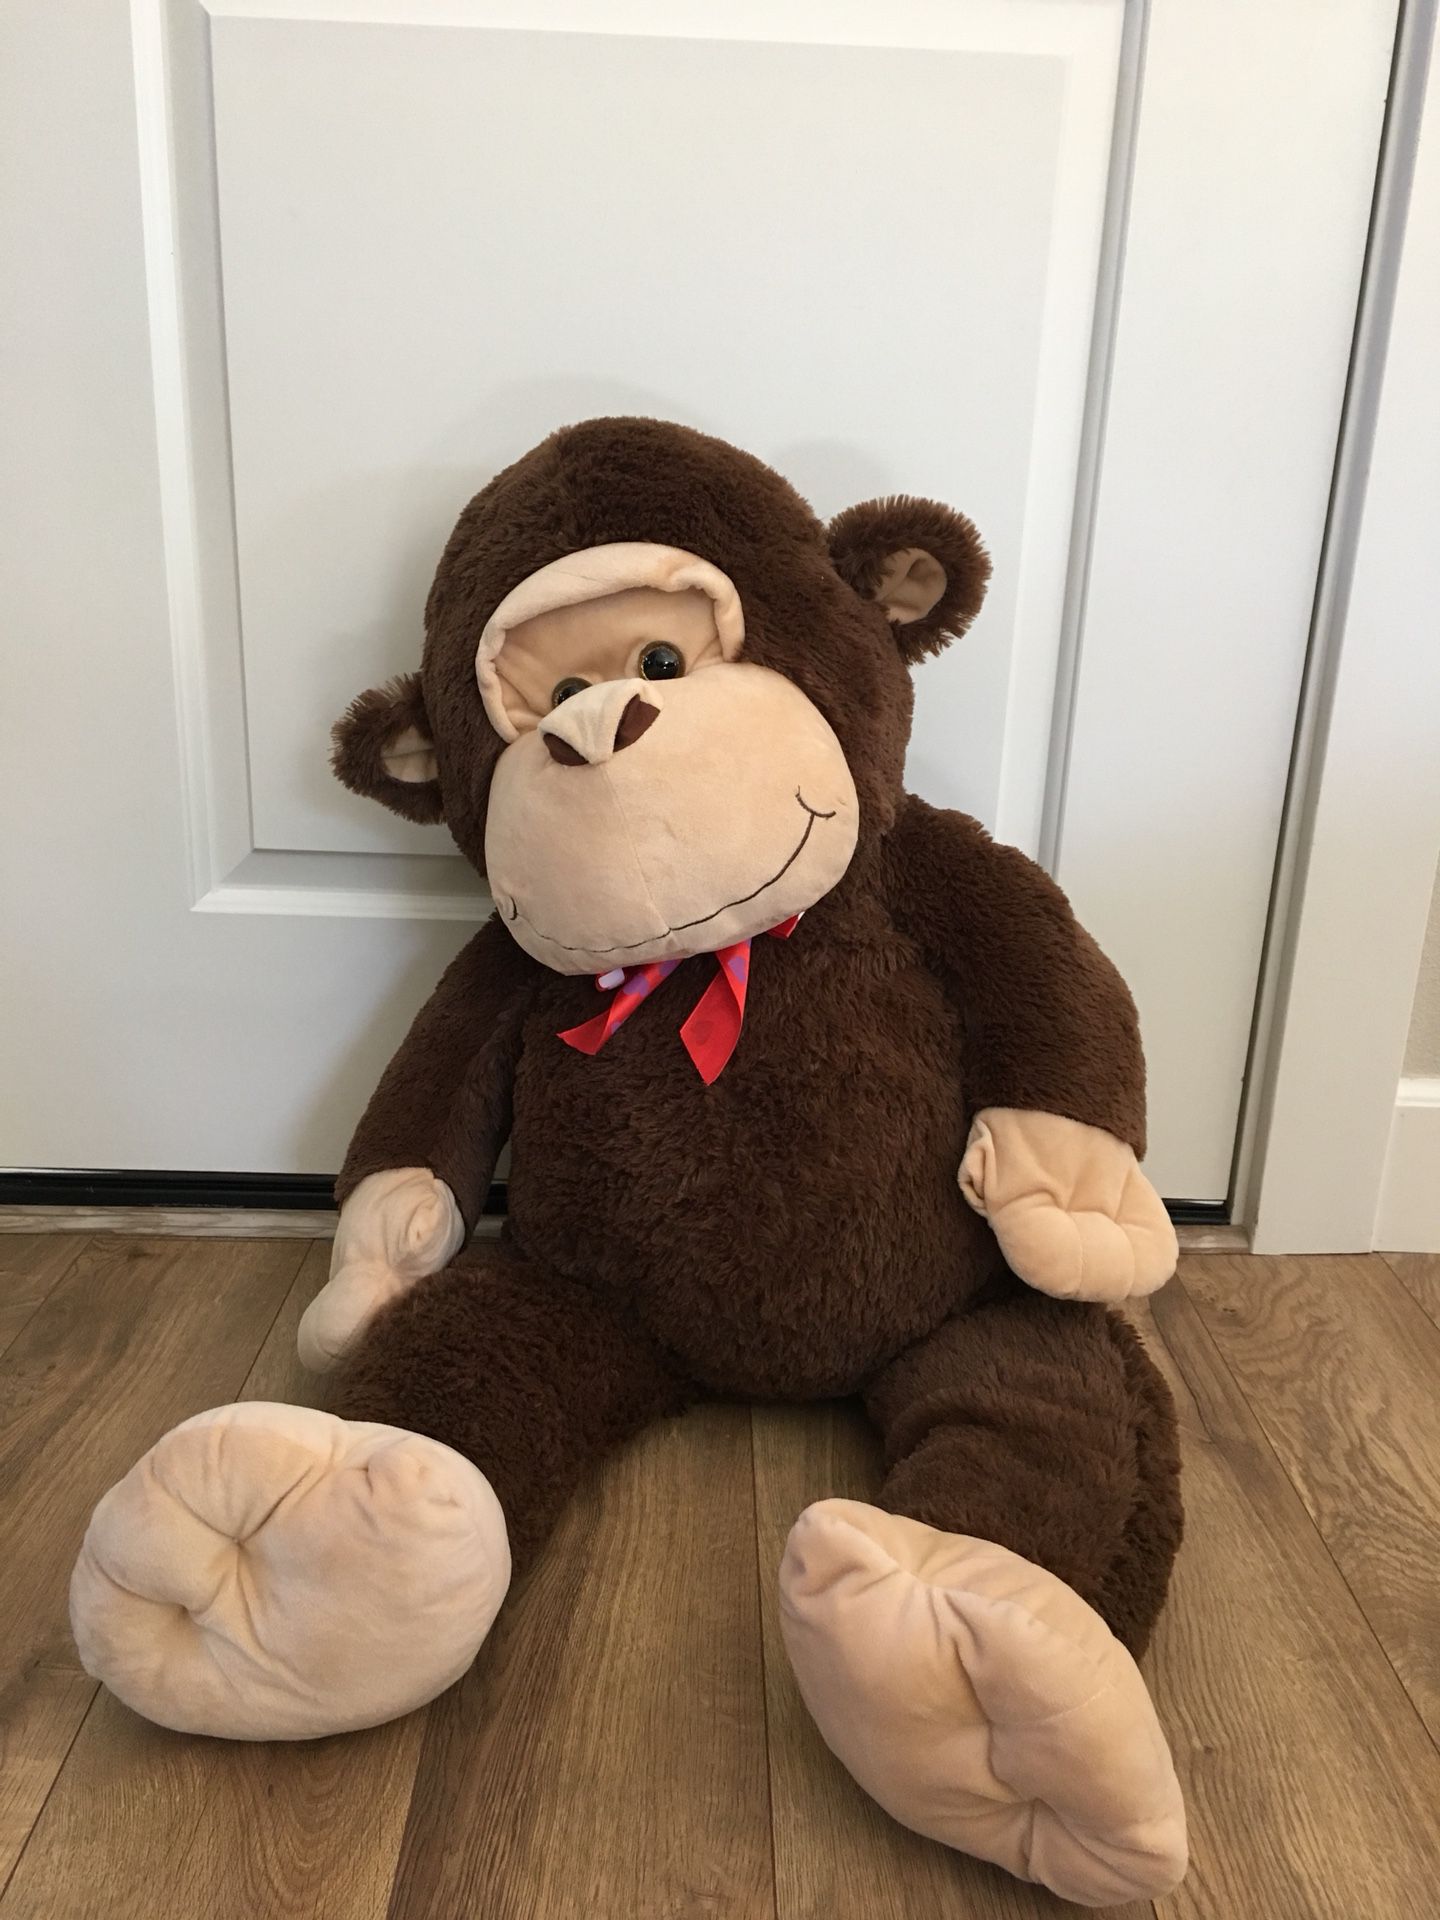 Giant stuffed animal monkey